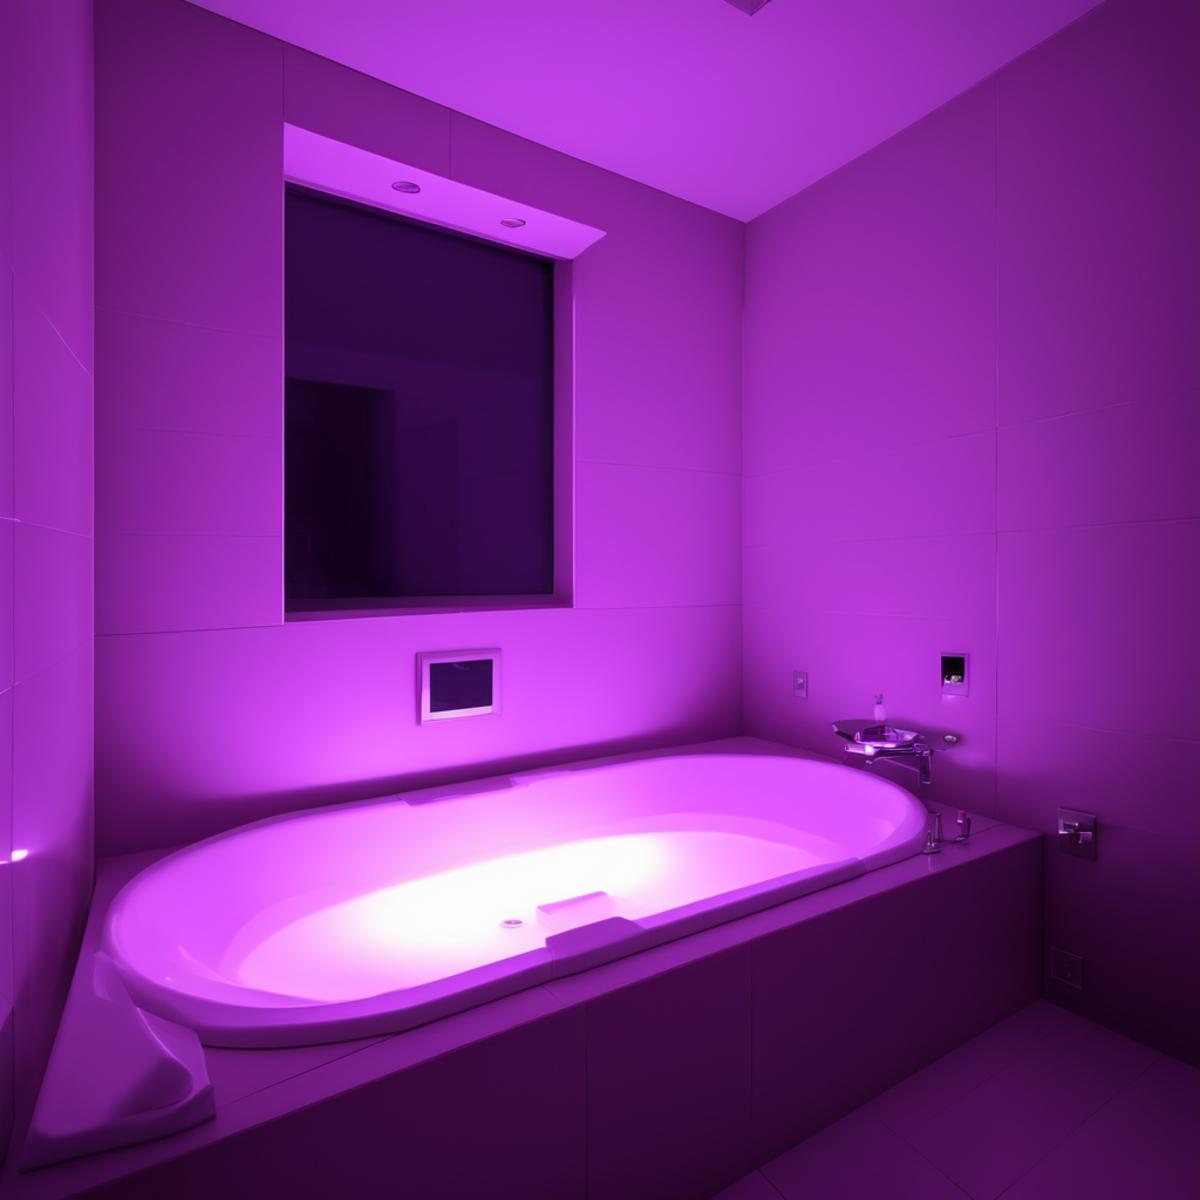 ラブホテルのお風呂 LOVE HOTEL Bathroom SDXL image by swingwings